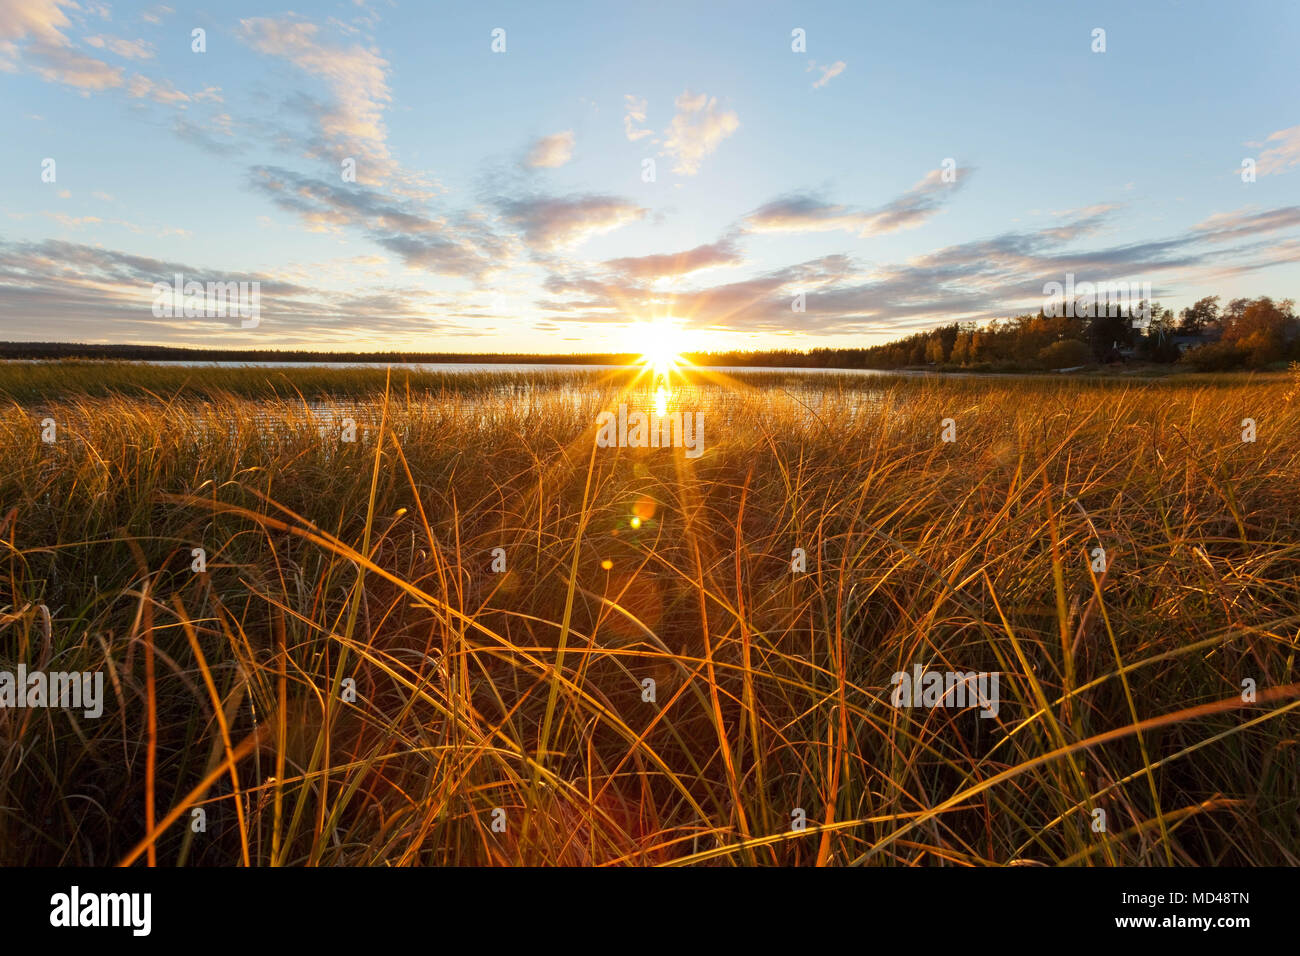 Midnight sun in Finland Stock Photo